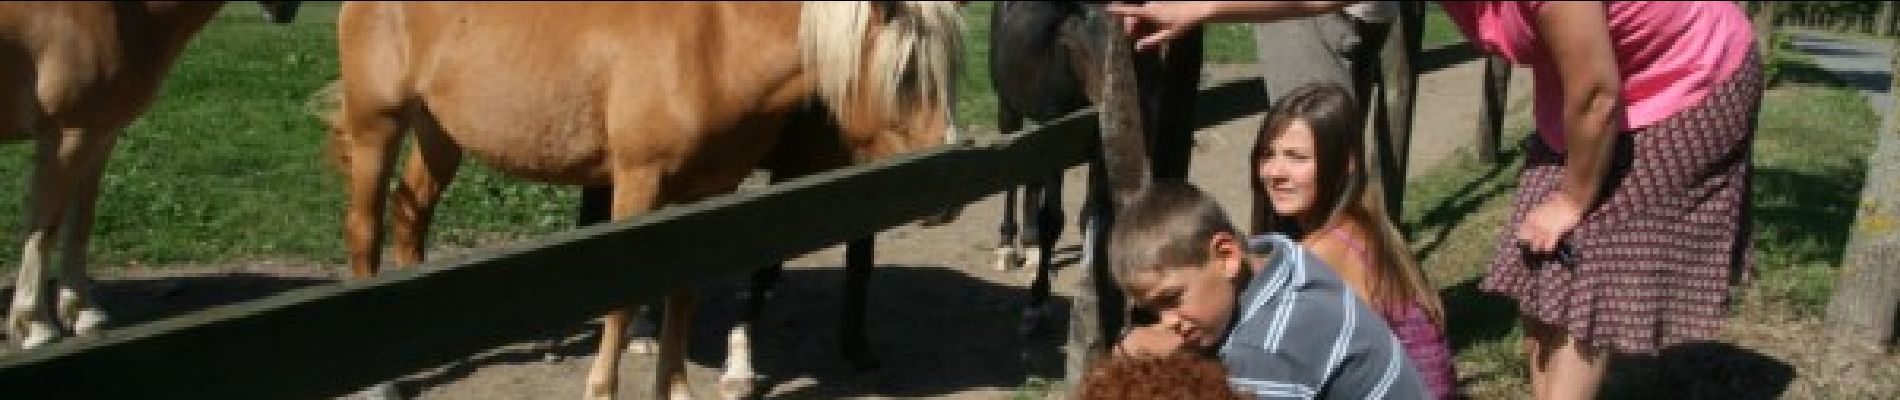 POI Beauraing - Our tip : the Comogne horse milk farm - Photo